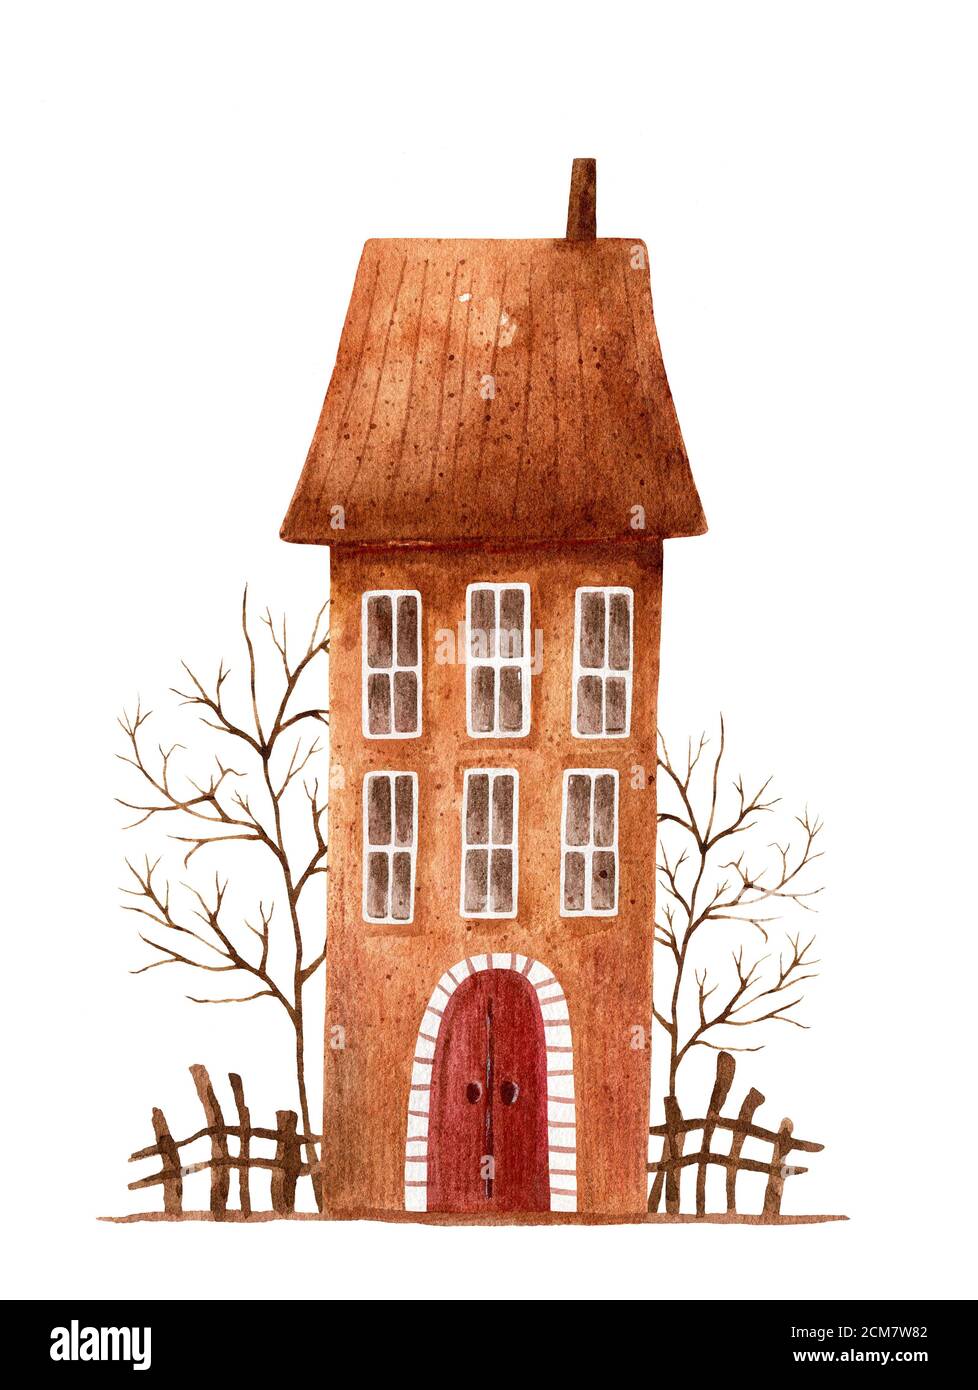 Automne aquarelle illustration de la maison brune avec arbres et clôture. Bâtiment stylisé dessiné à la main, isolé sur fond blanc. Banque D'Images